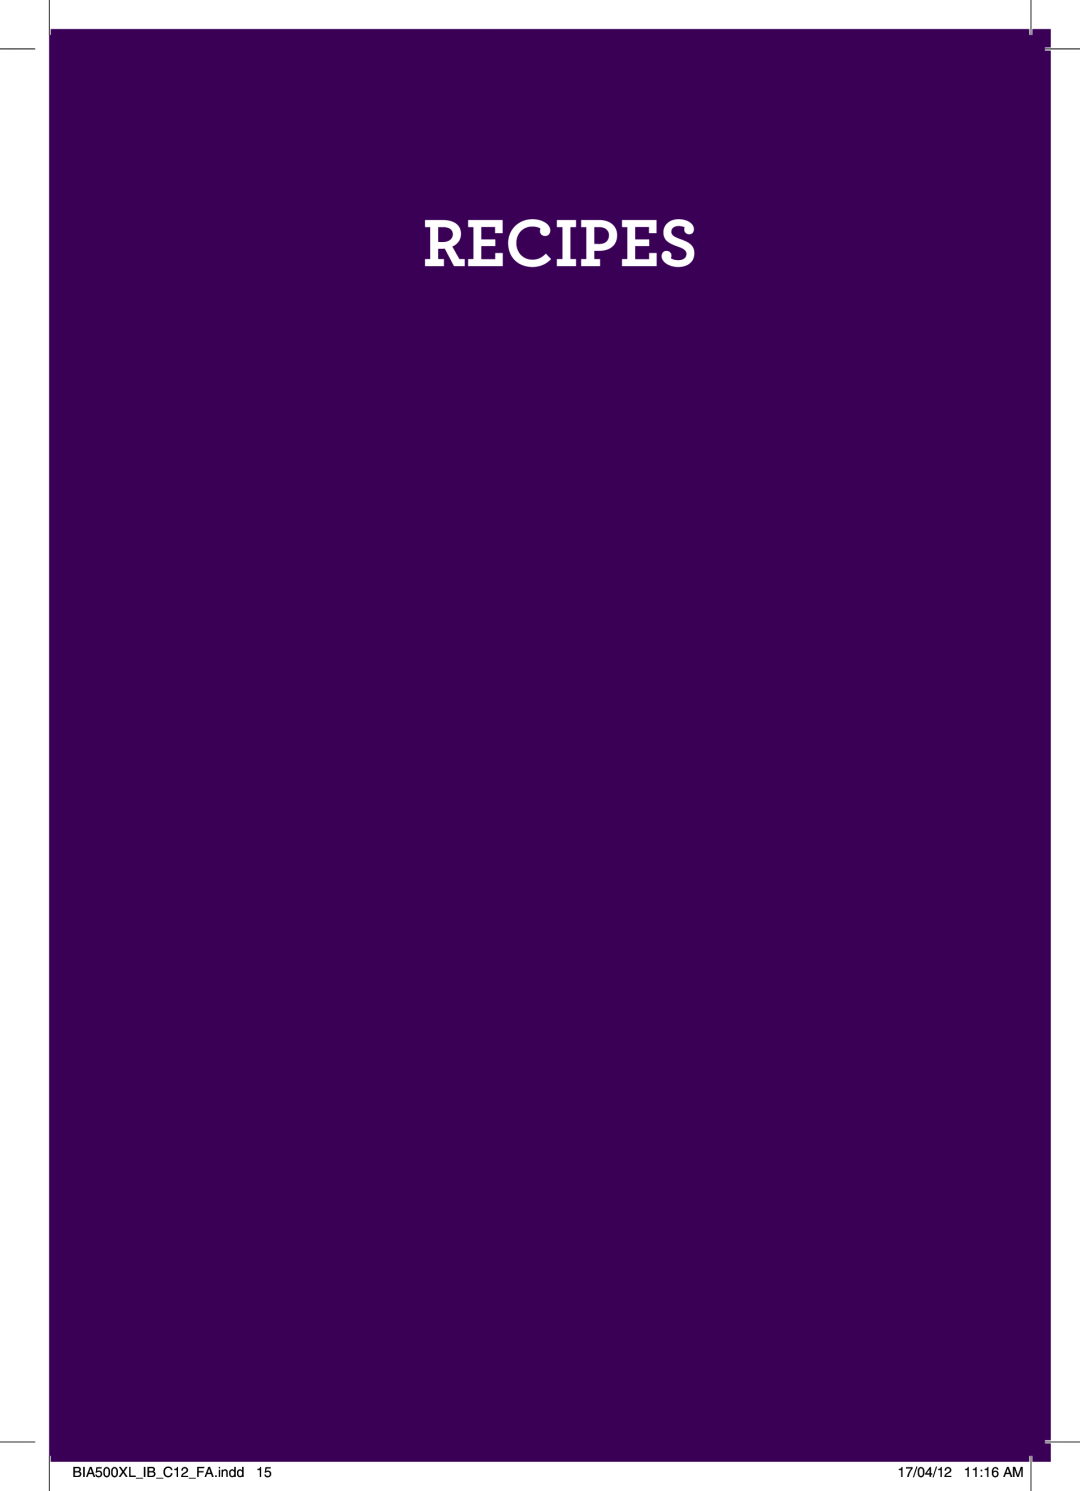 Breville manual Recipes, BIA500XLIBC12FA.indd, 17/04/12 1116 AM 